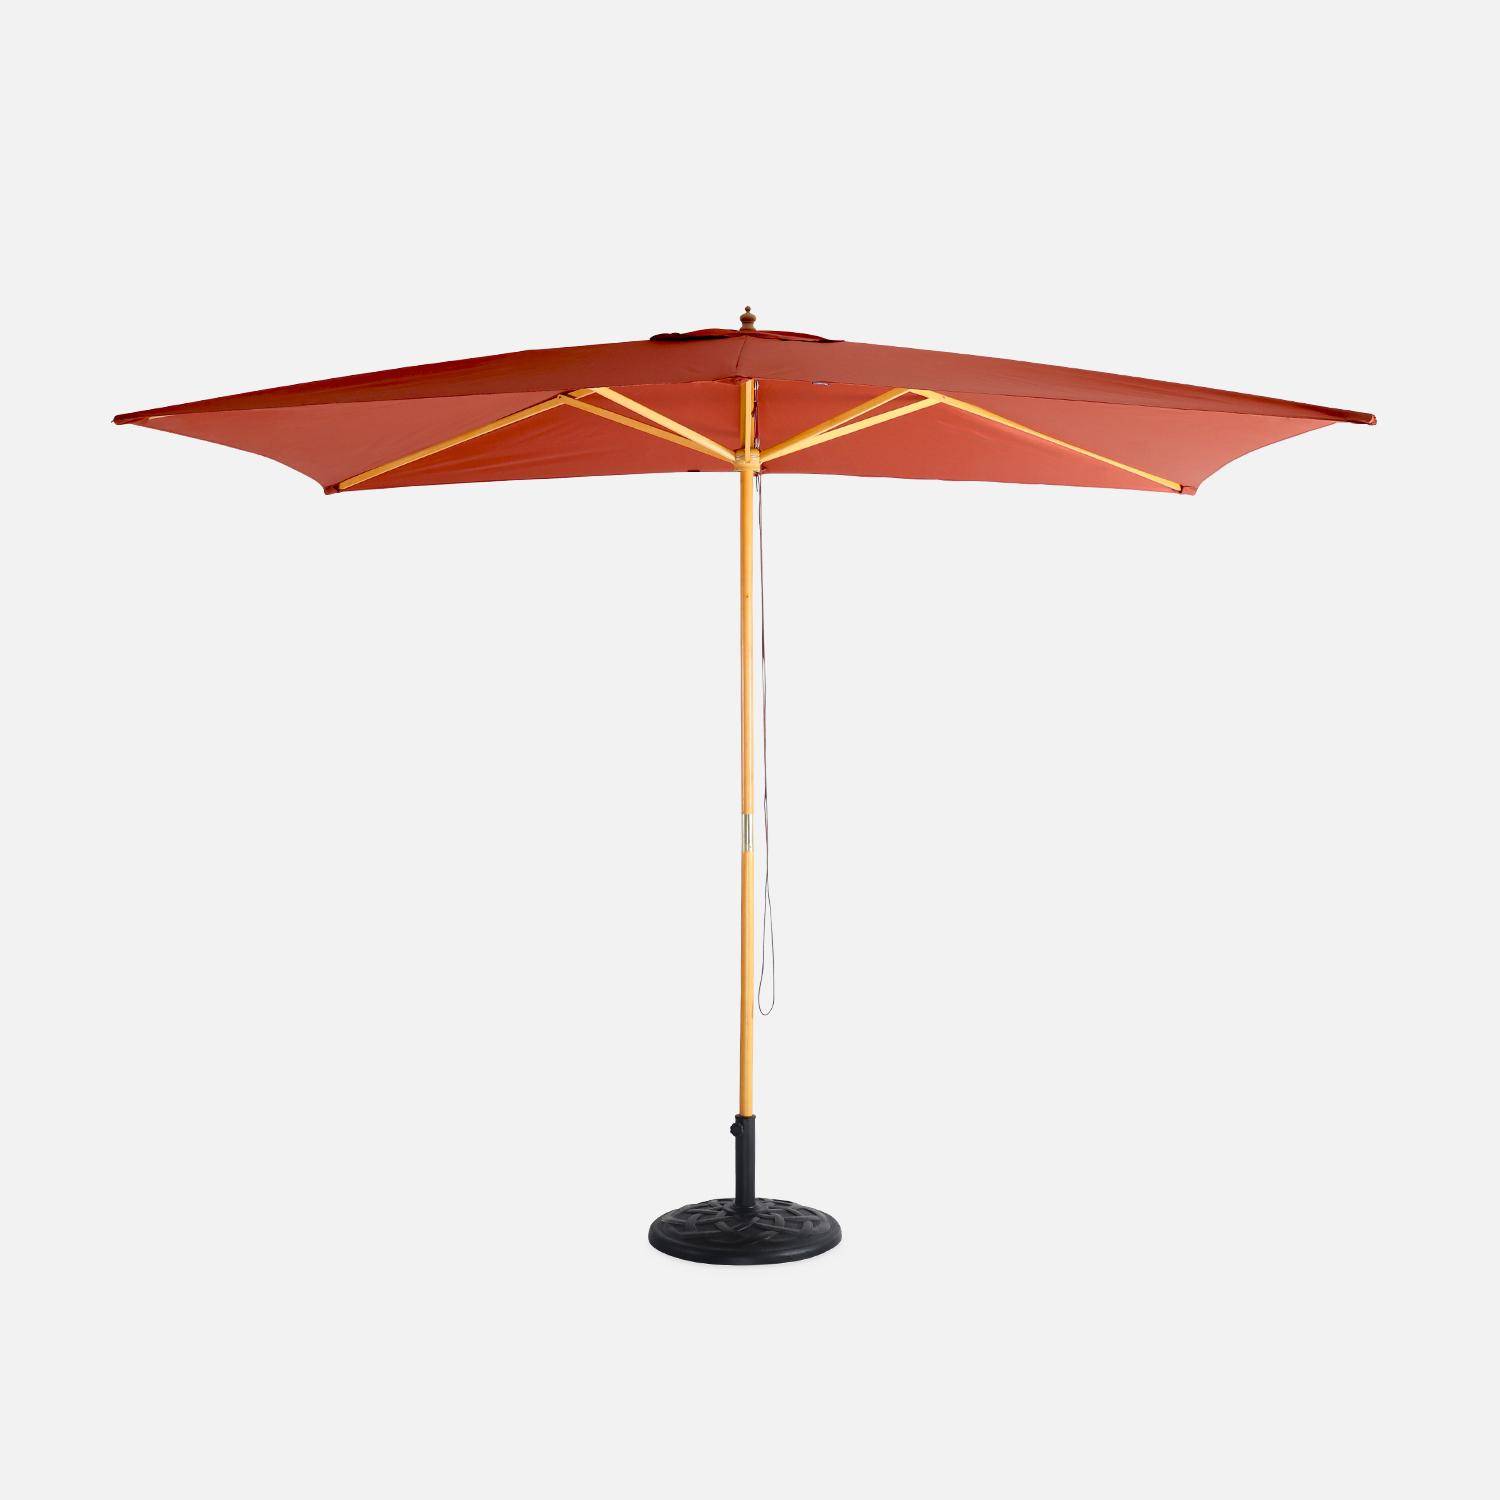 Parasol droit rectangulaire en bois 2x3m - Cabourg Terracotta - mât central en bois, système d'ouverture manuelle, poulie Photo2